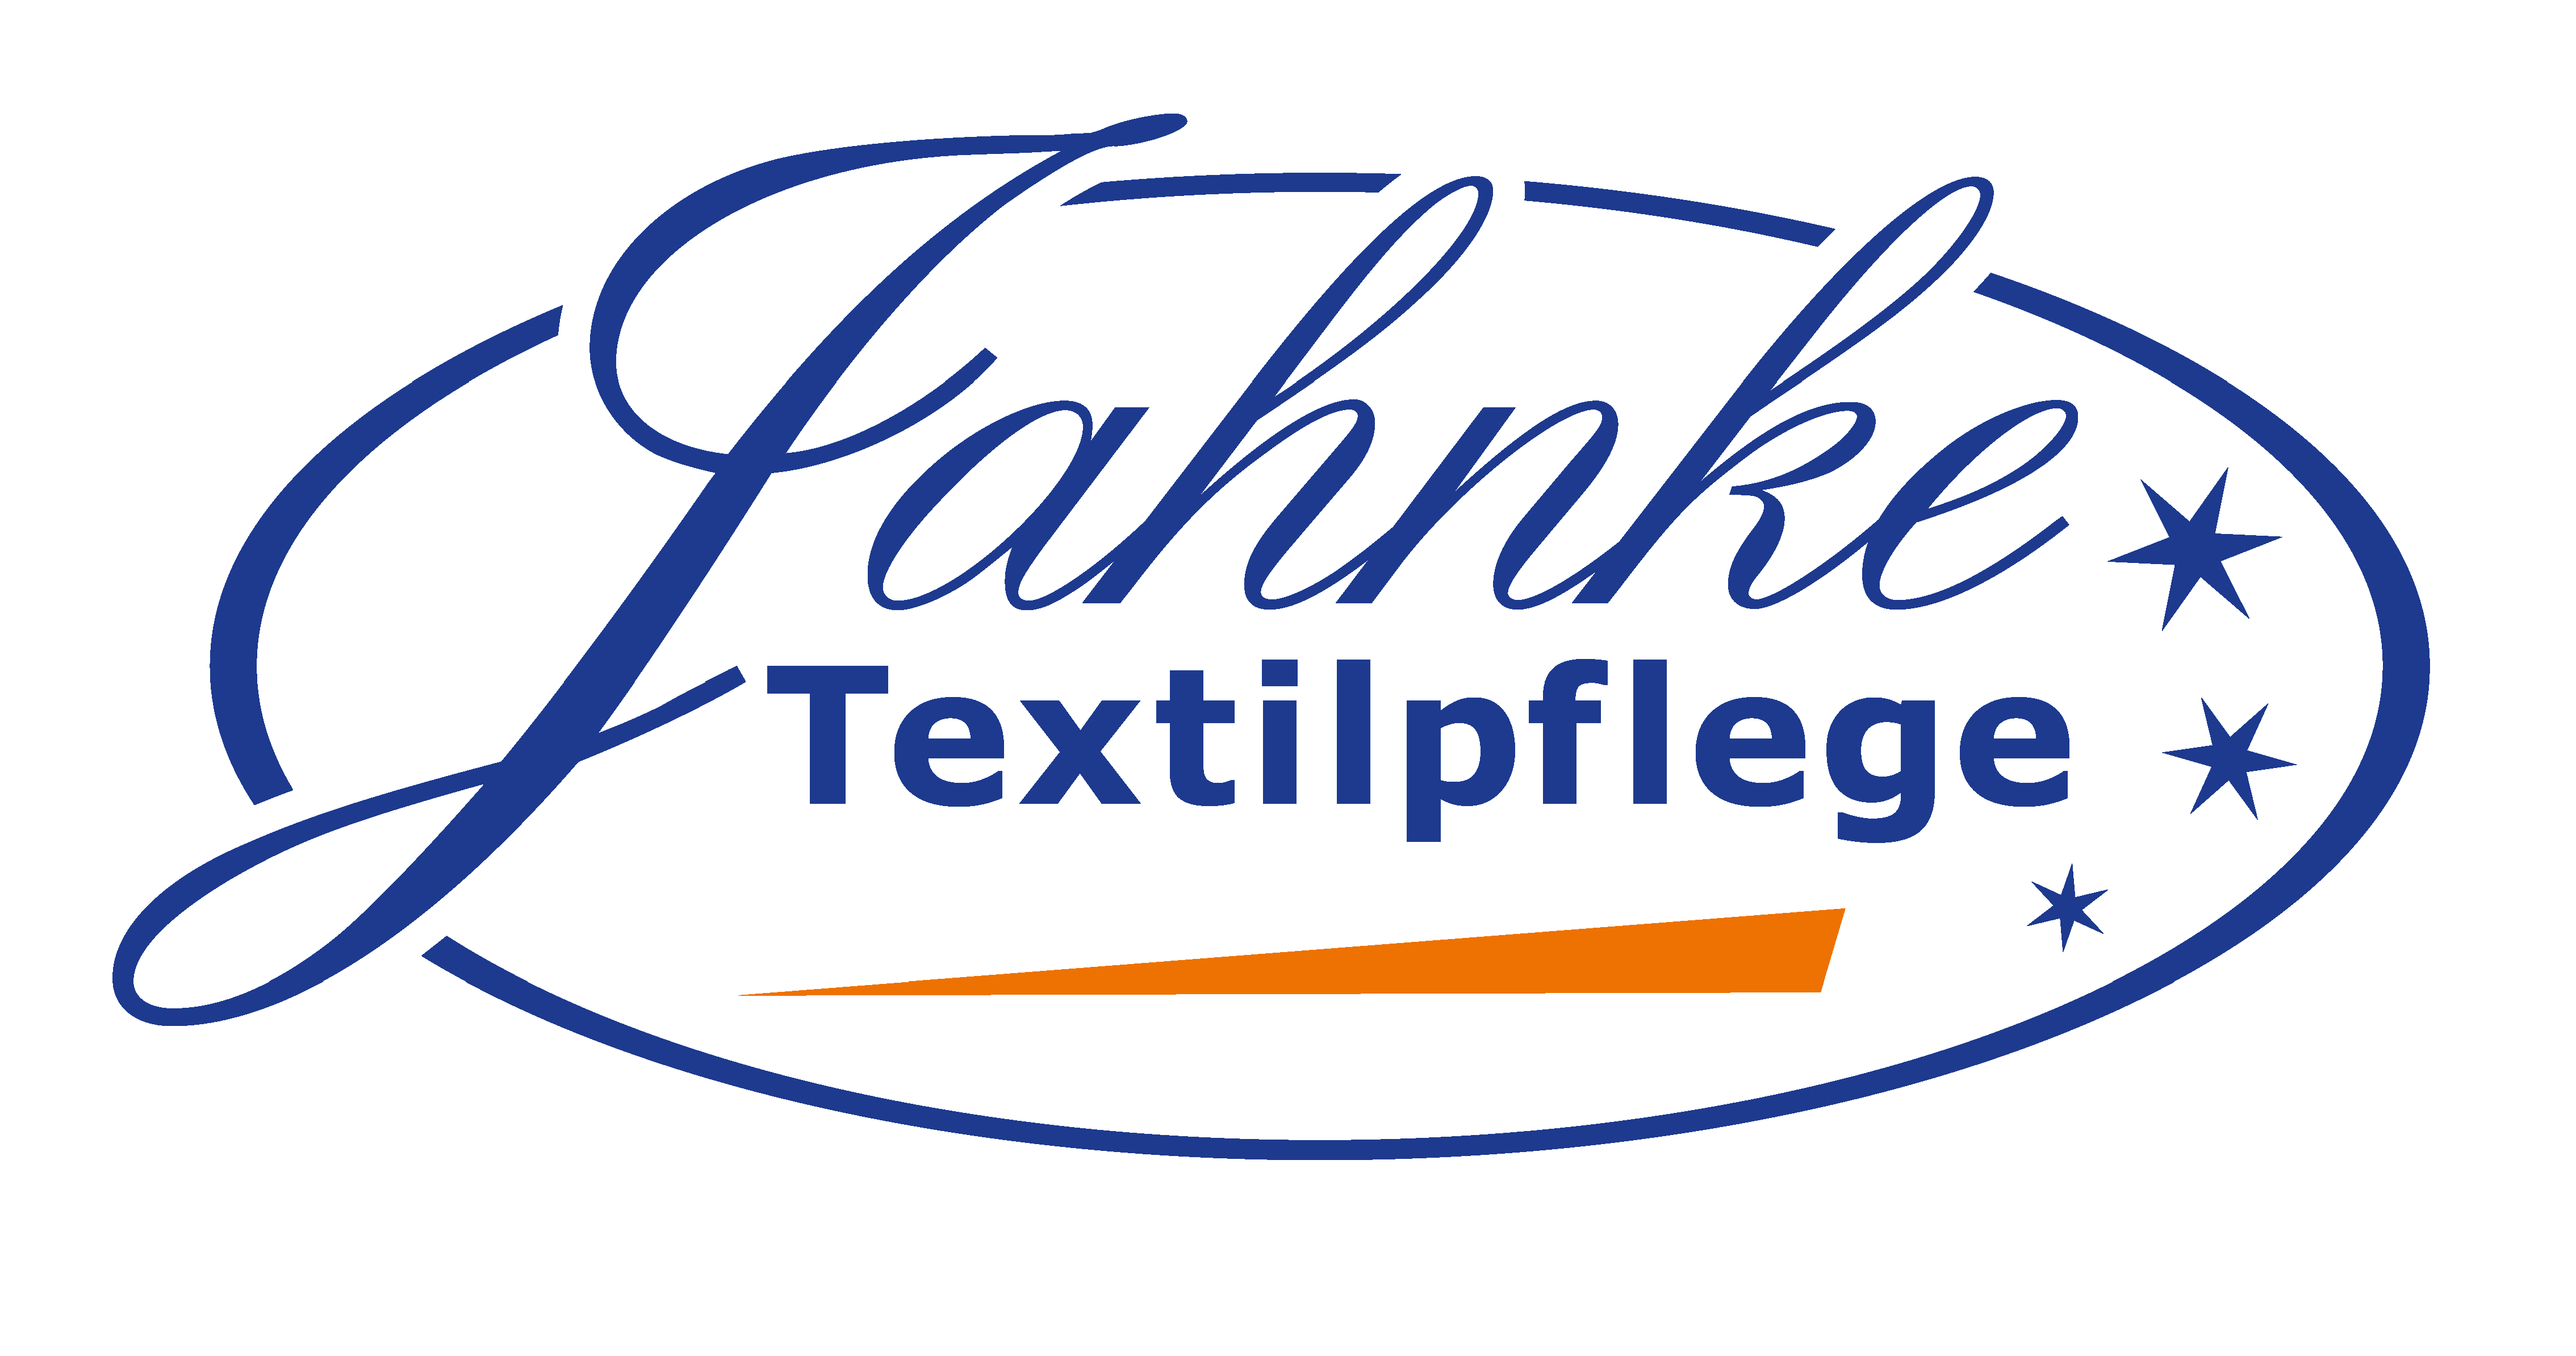 Seit fast einem halben Jahrhundert eine der Top-Adressen für
professionelle Wäsche und Textilreinigung in Hannover